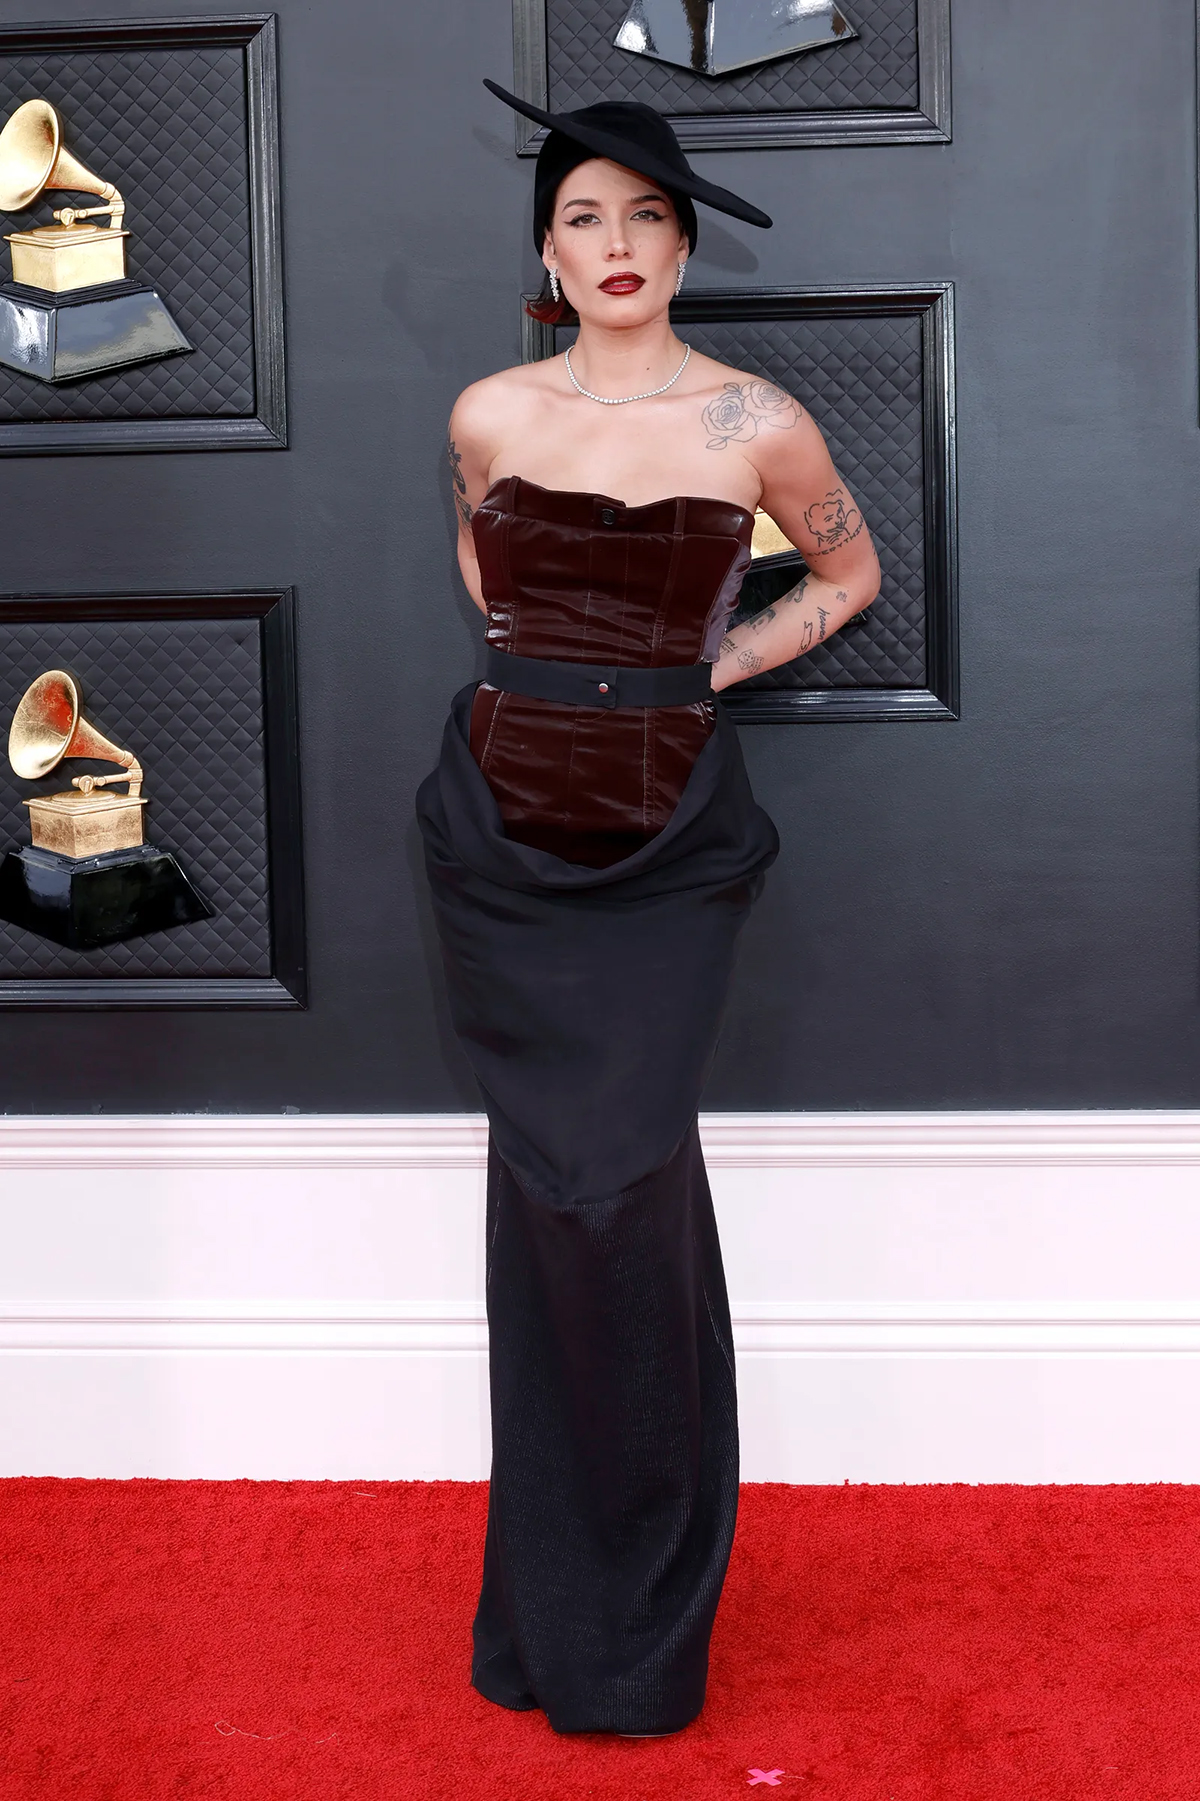 Кортни Кардашьян, Дуа Липа, Пэрис Хилтон, Леди Гага и другие звёзды показали свои наряды на Grammy-2022